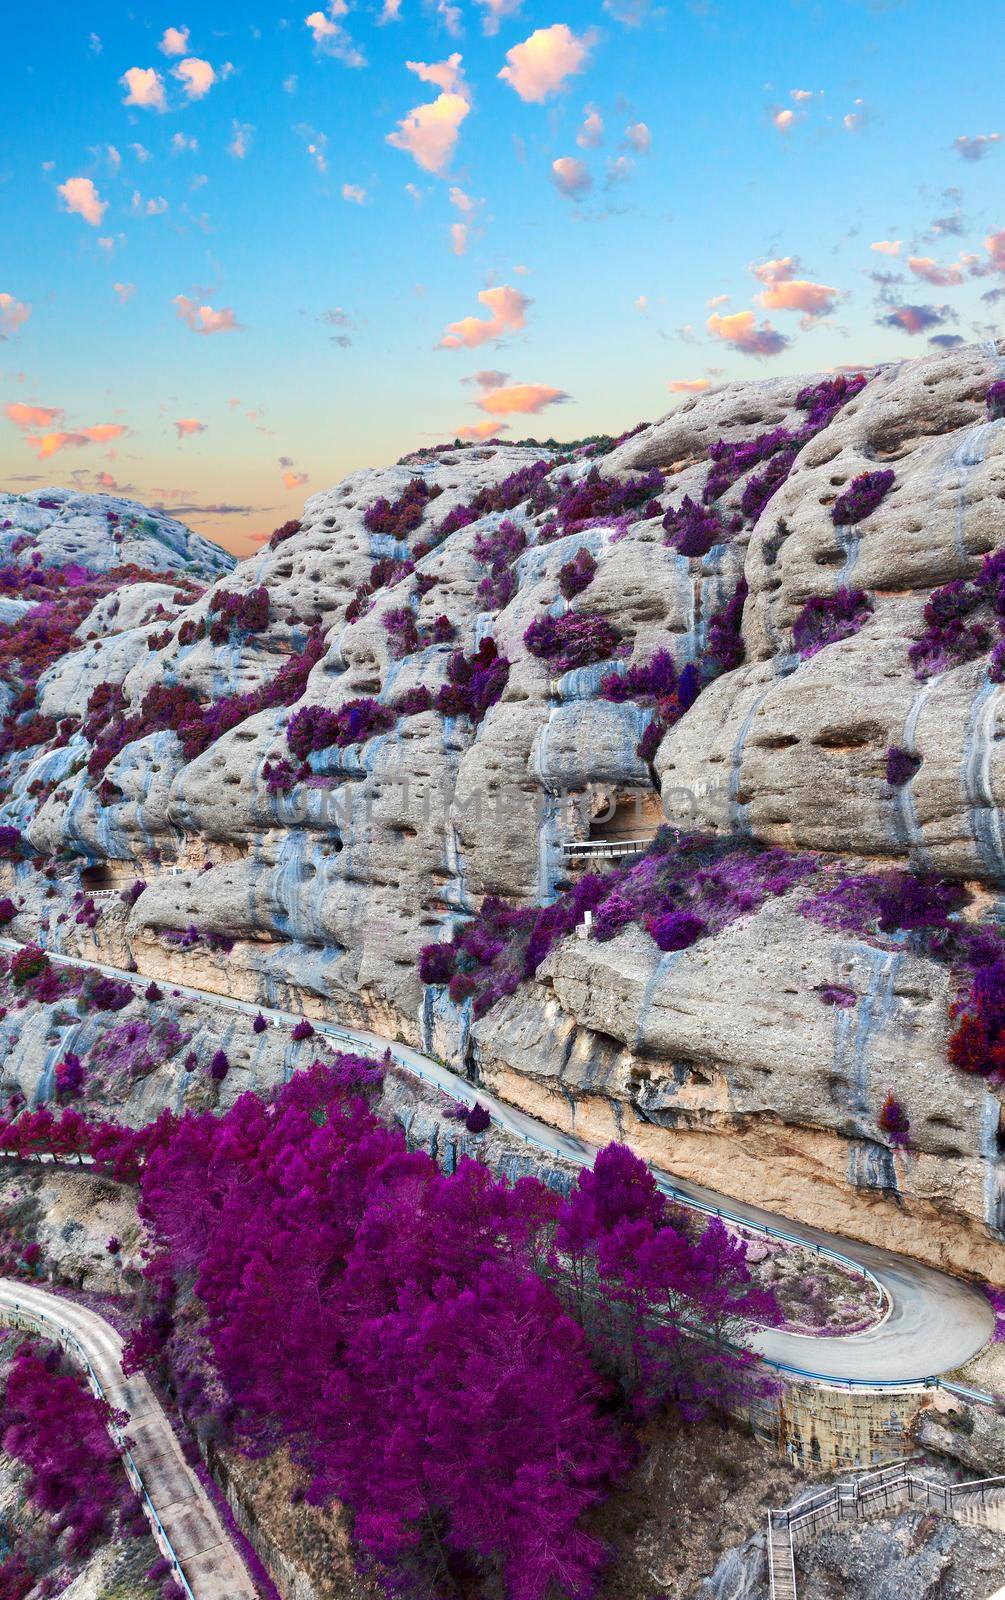 Natural scenery scene in purple tone by carloscastilla